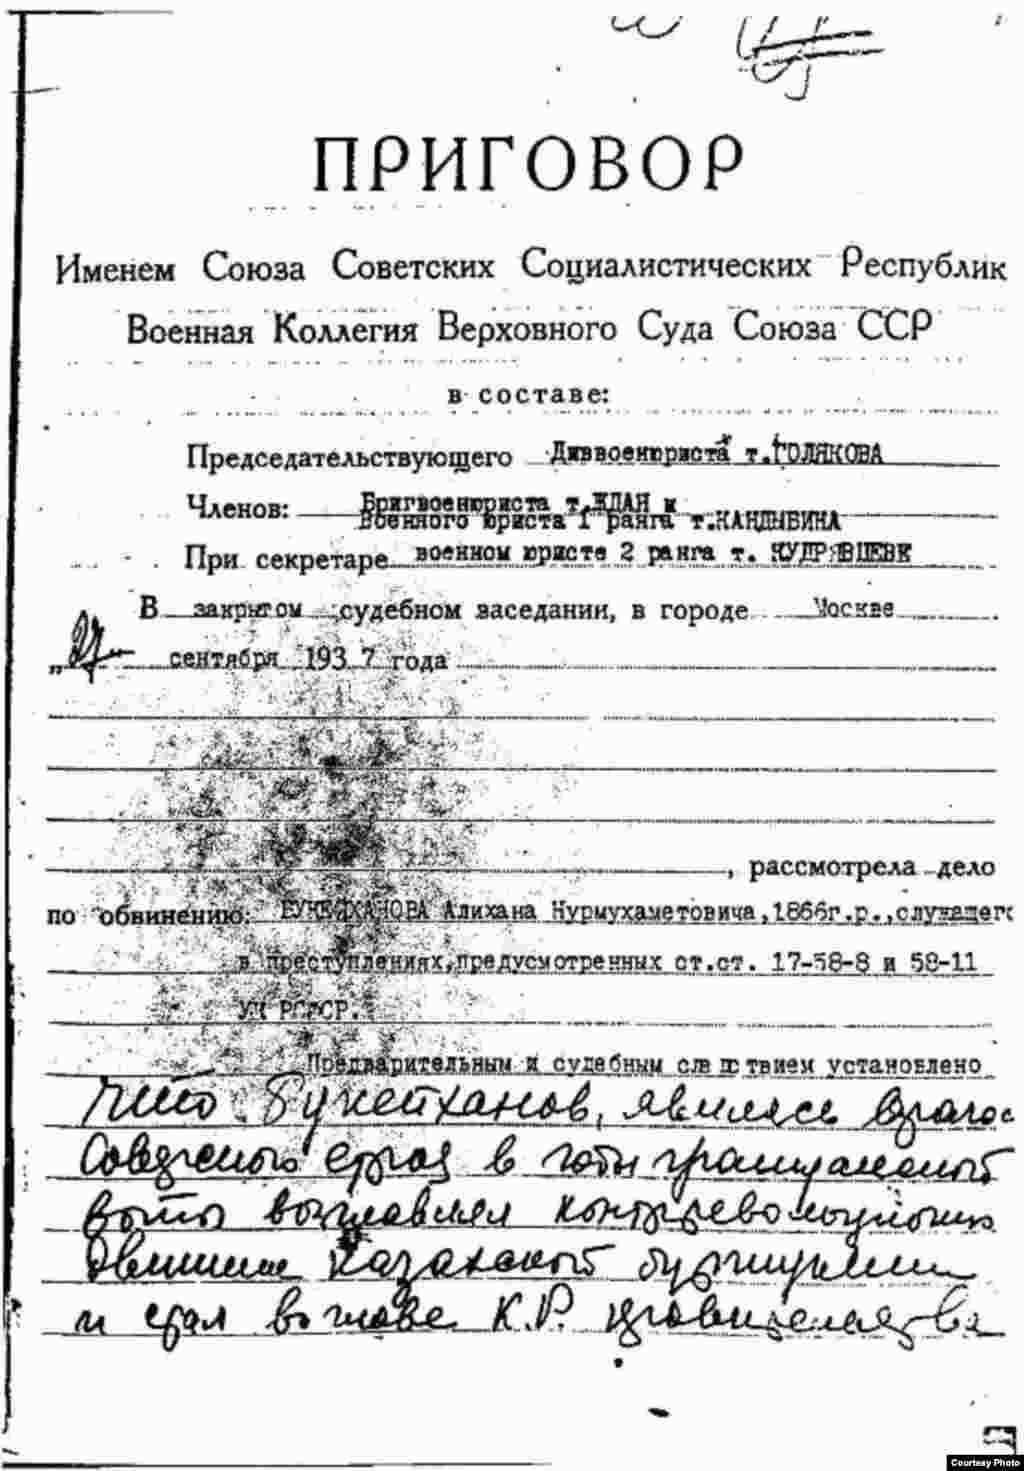 Приговор Военной коллегии Верховного суда СССР о расстреле Букейханова.